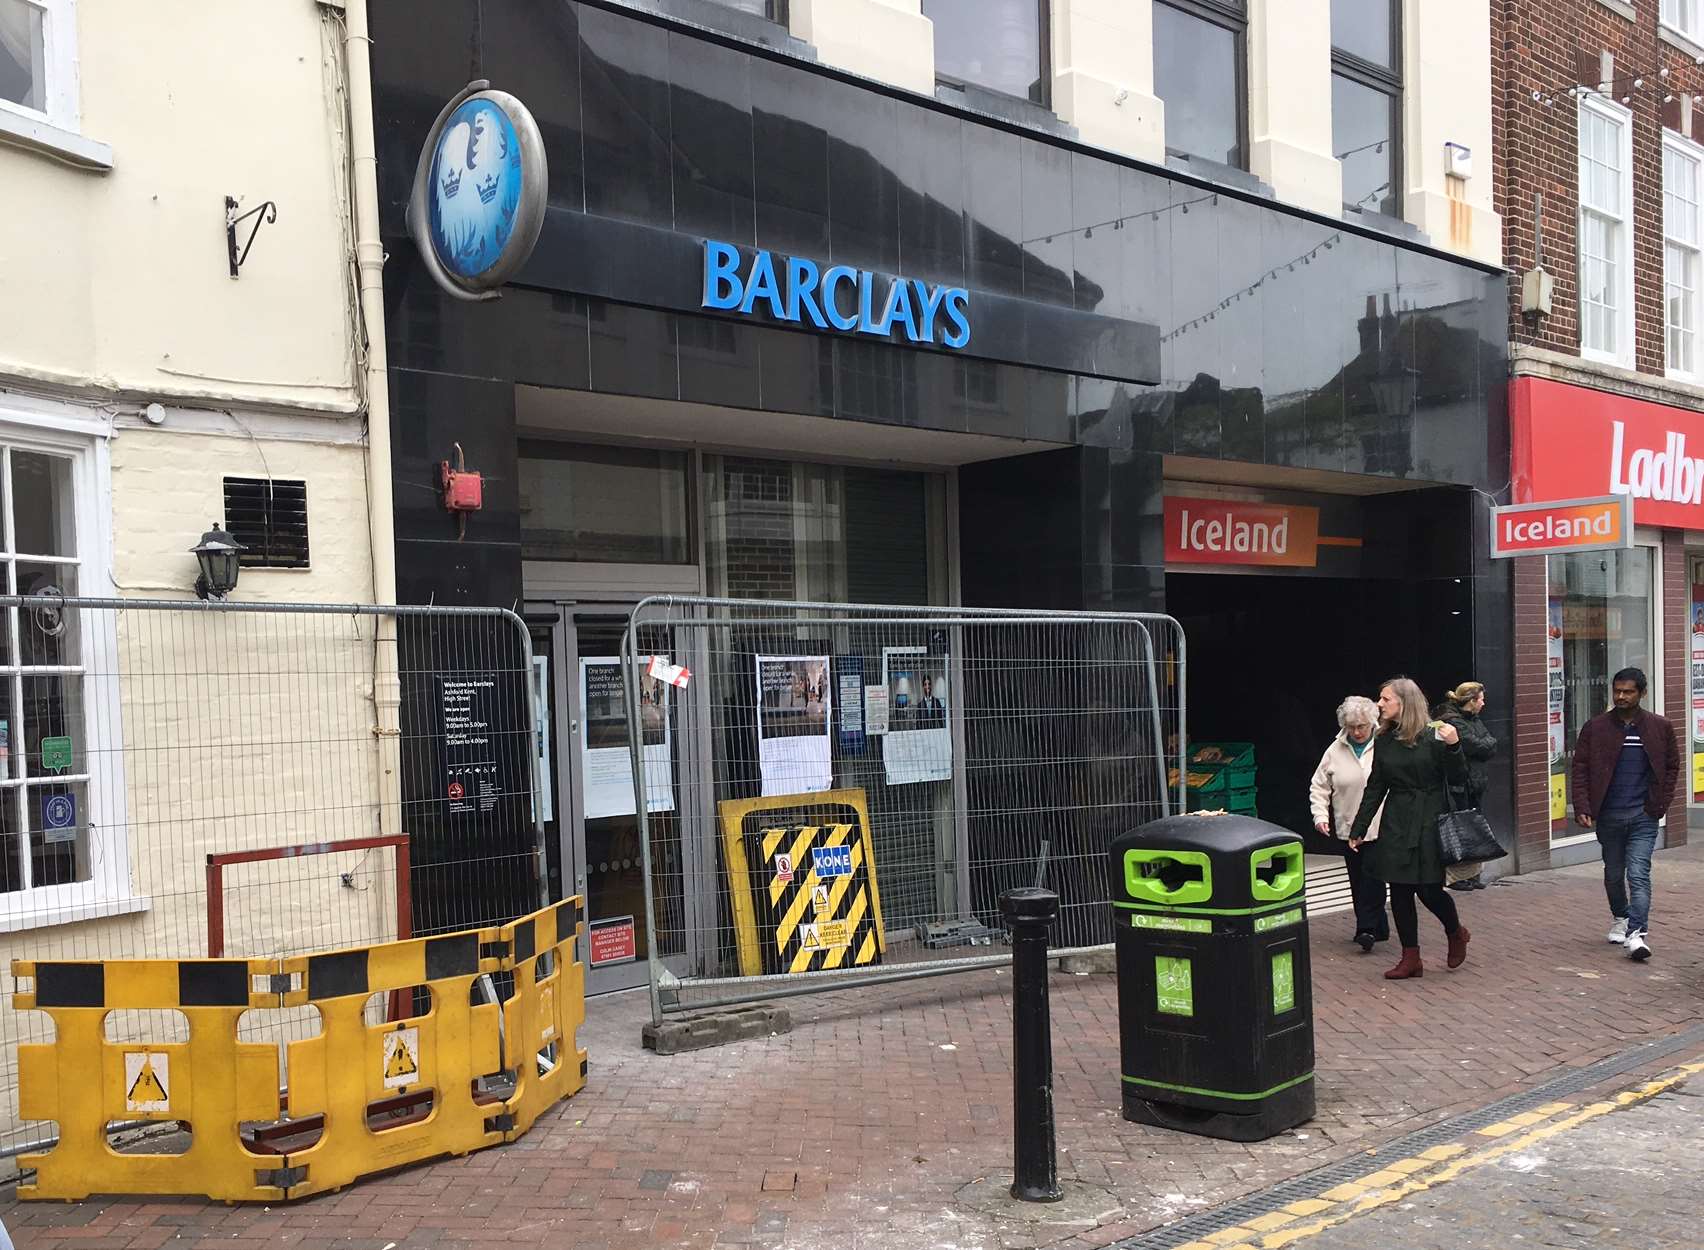 Barclays in Ashford High Street is under refurbishment